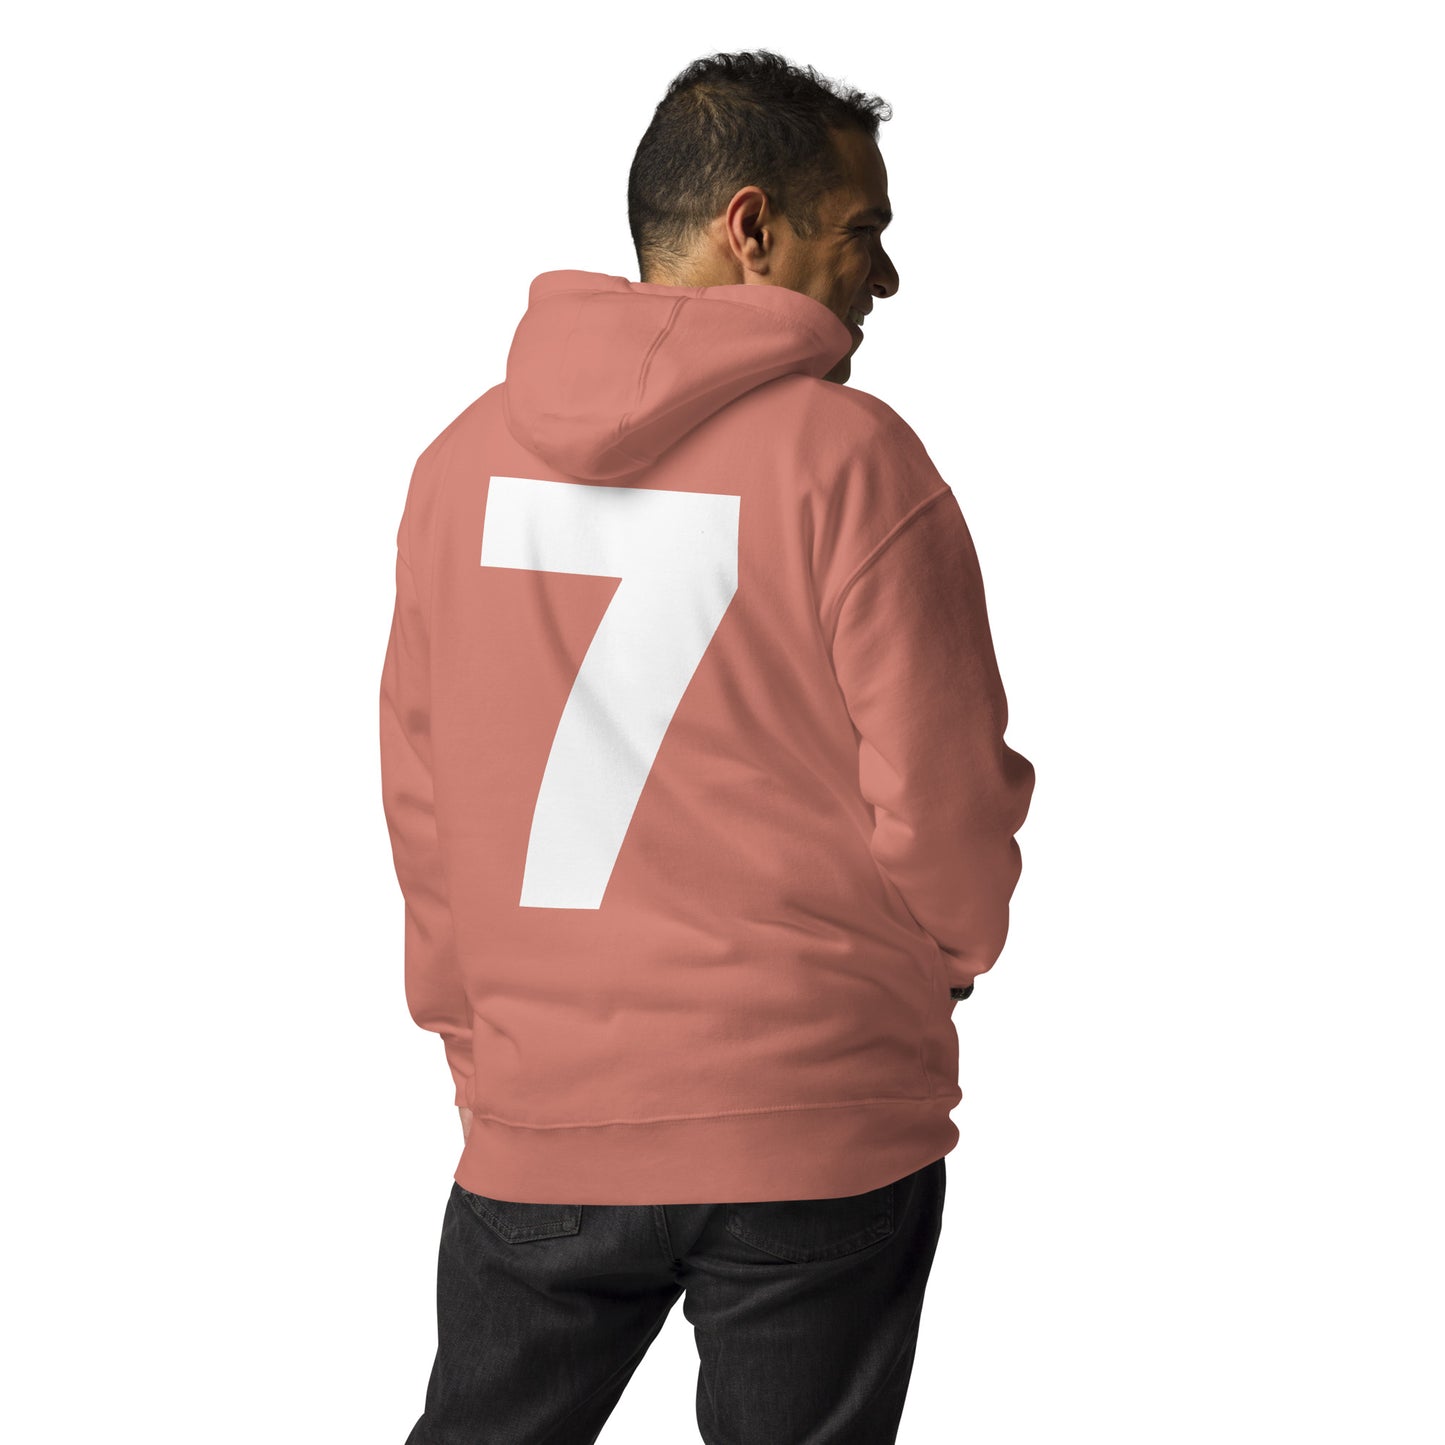 gym-7-severn-hoodies - hoddes for men - tshirt - tshirts - graphic tees.